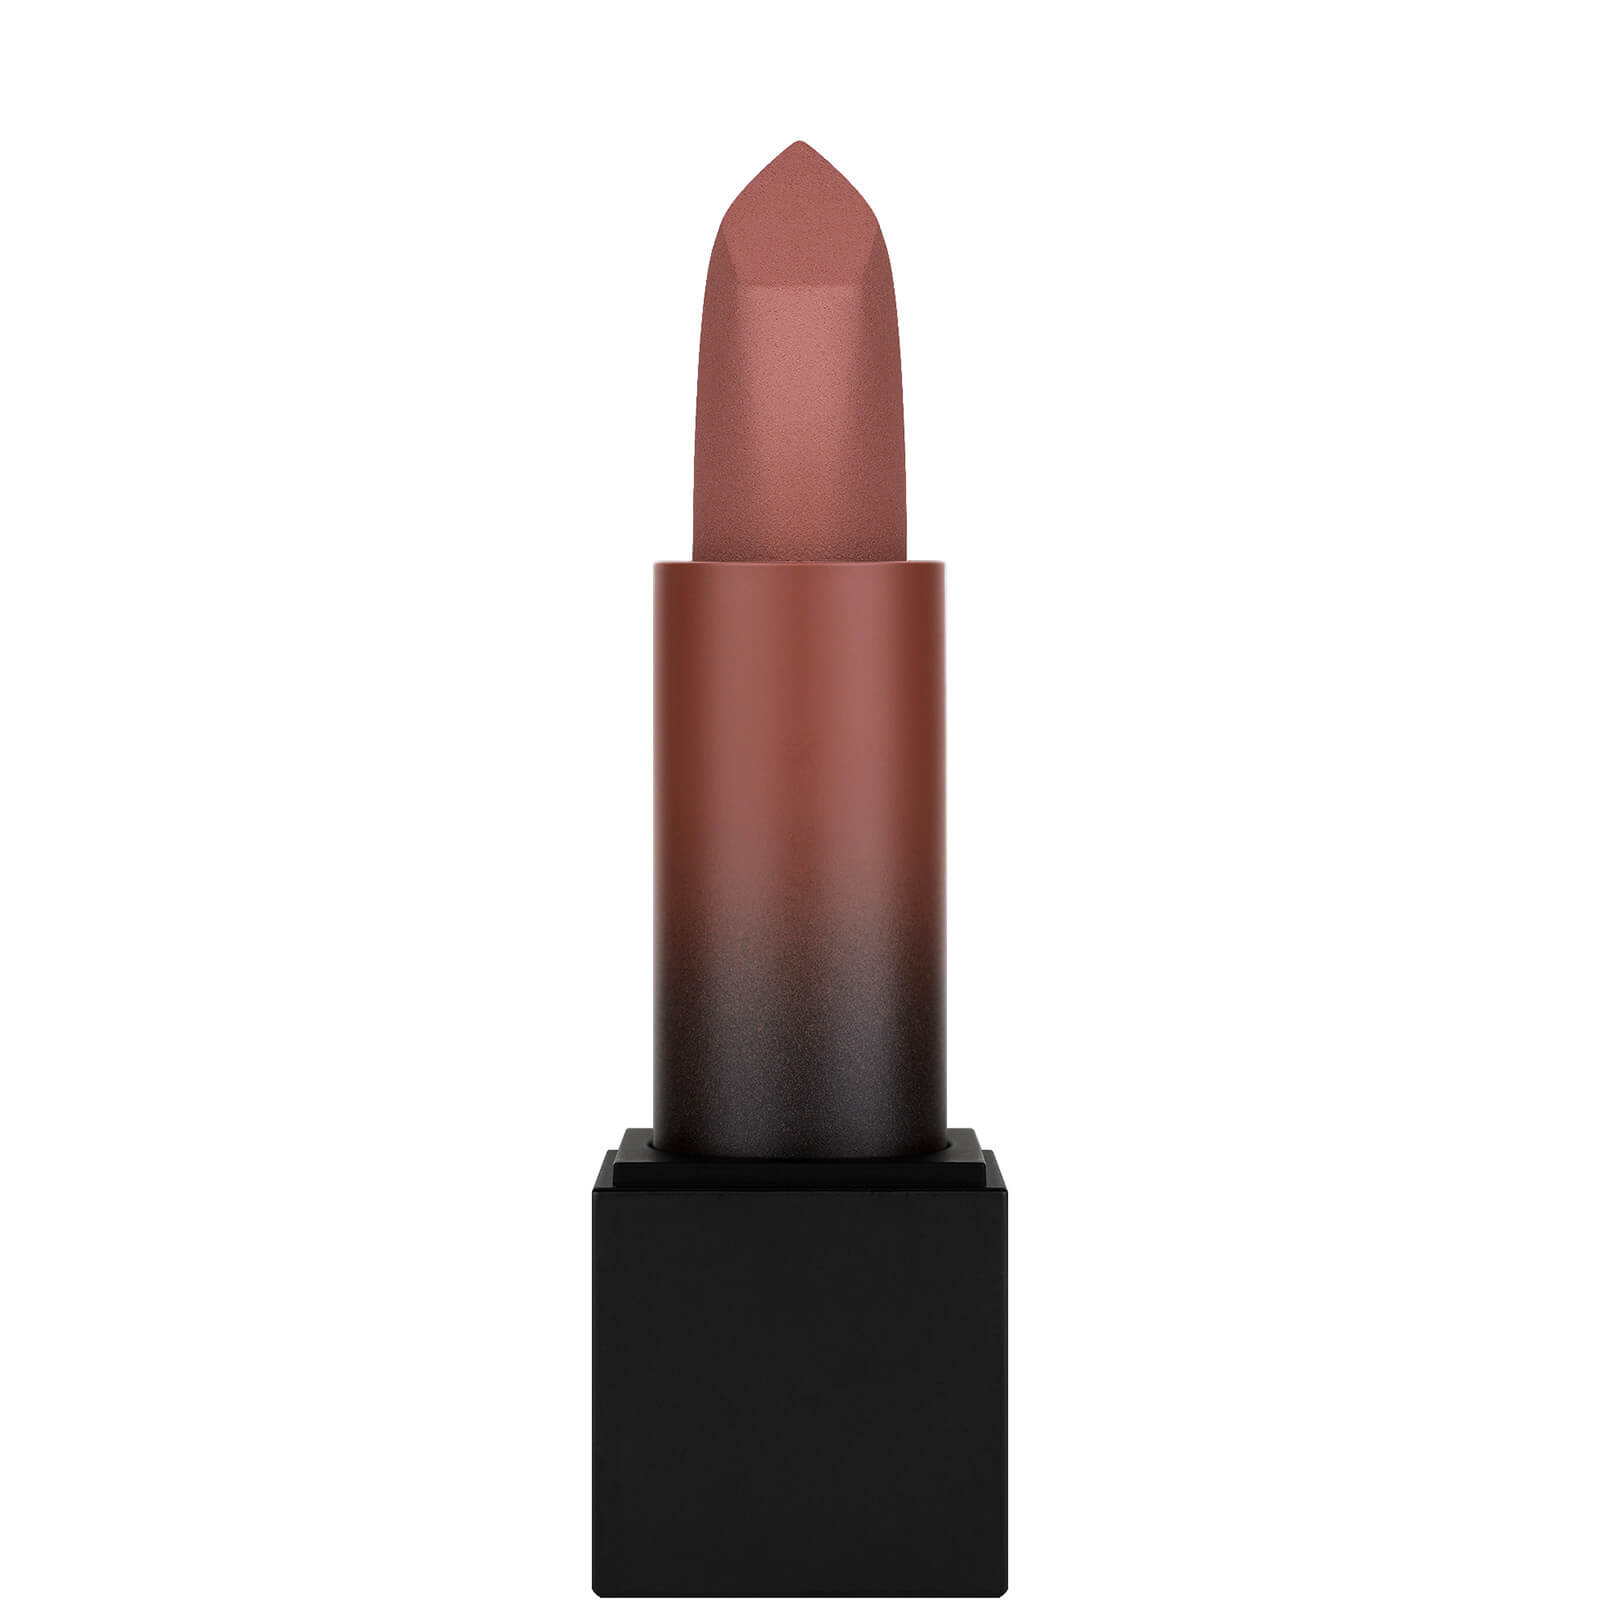 Photos - Lipstick & Lip Gloss Huda Beauty Power Bullet Matte Lipstick - Joyride 